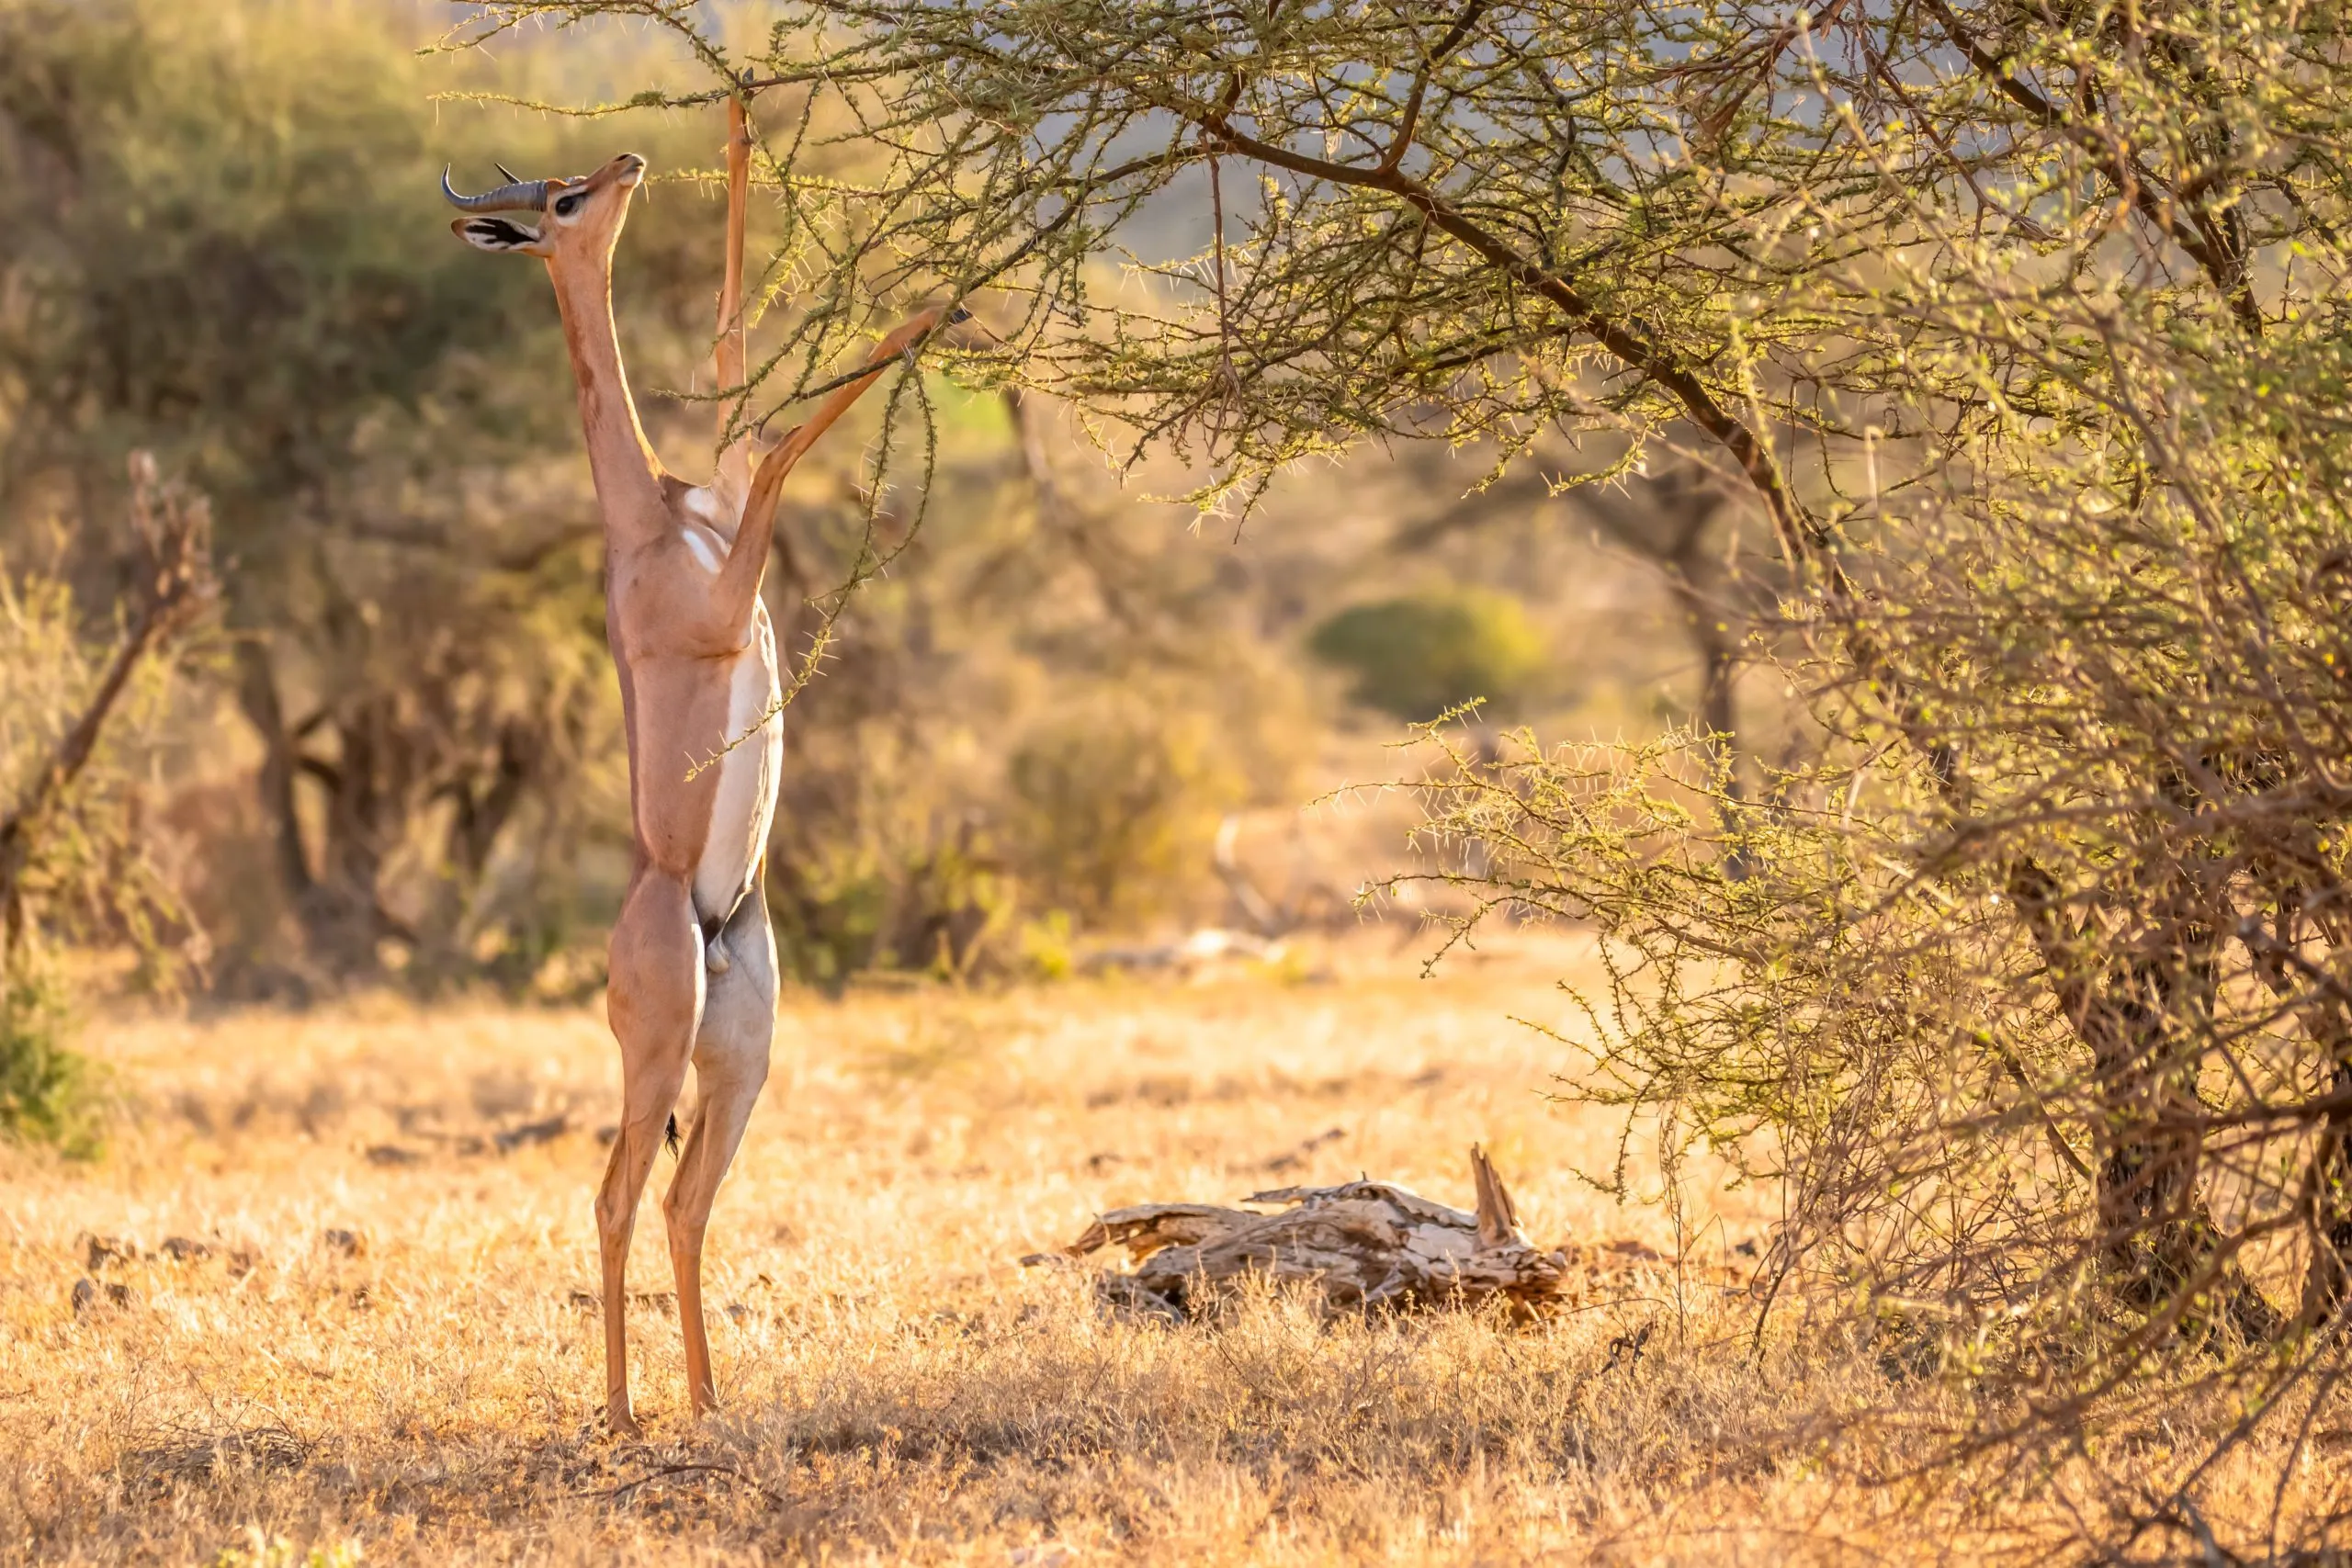 Gerenuk, Litocranius walleri anche giraffa gazzella, antilope dal collo lungo e sottile, che si regge sulle zampe posteriori durante l'alimentazione delle foglie. Colori africani della sera. Riserva nazionale di Samburu, Kenya